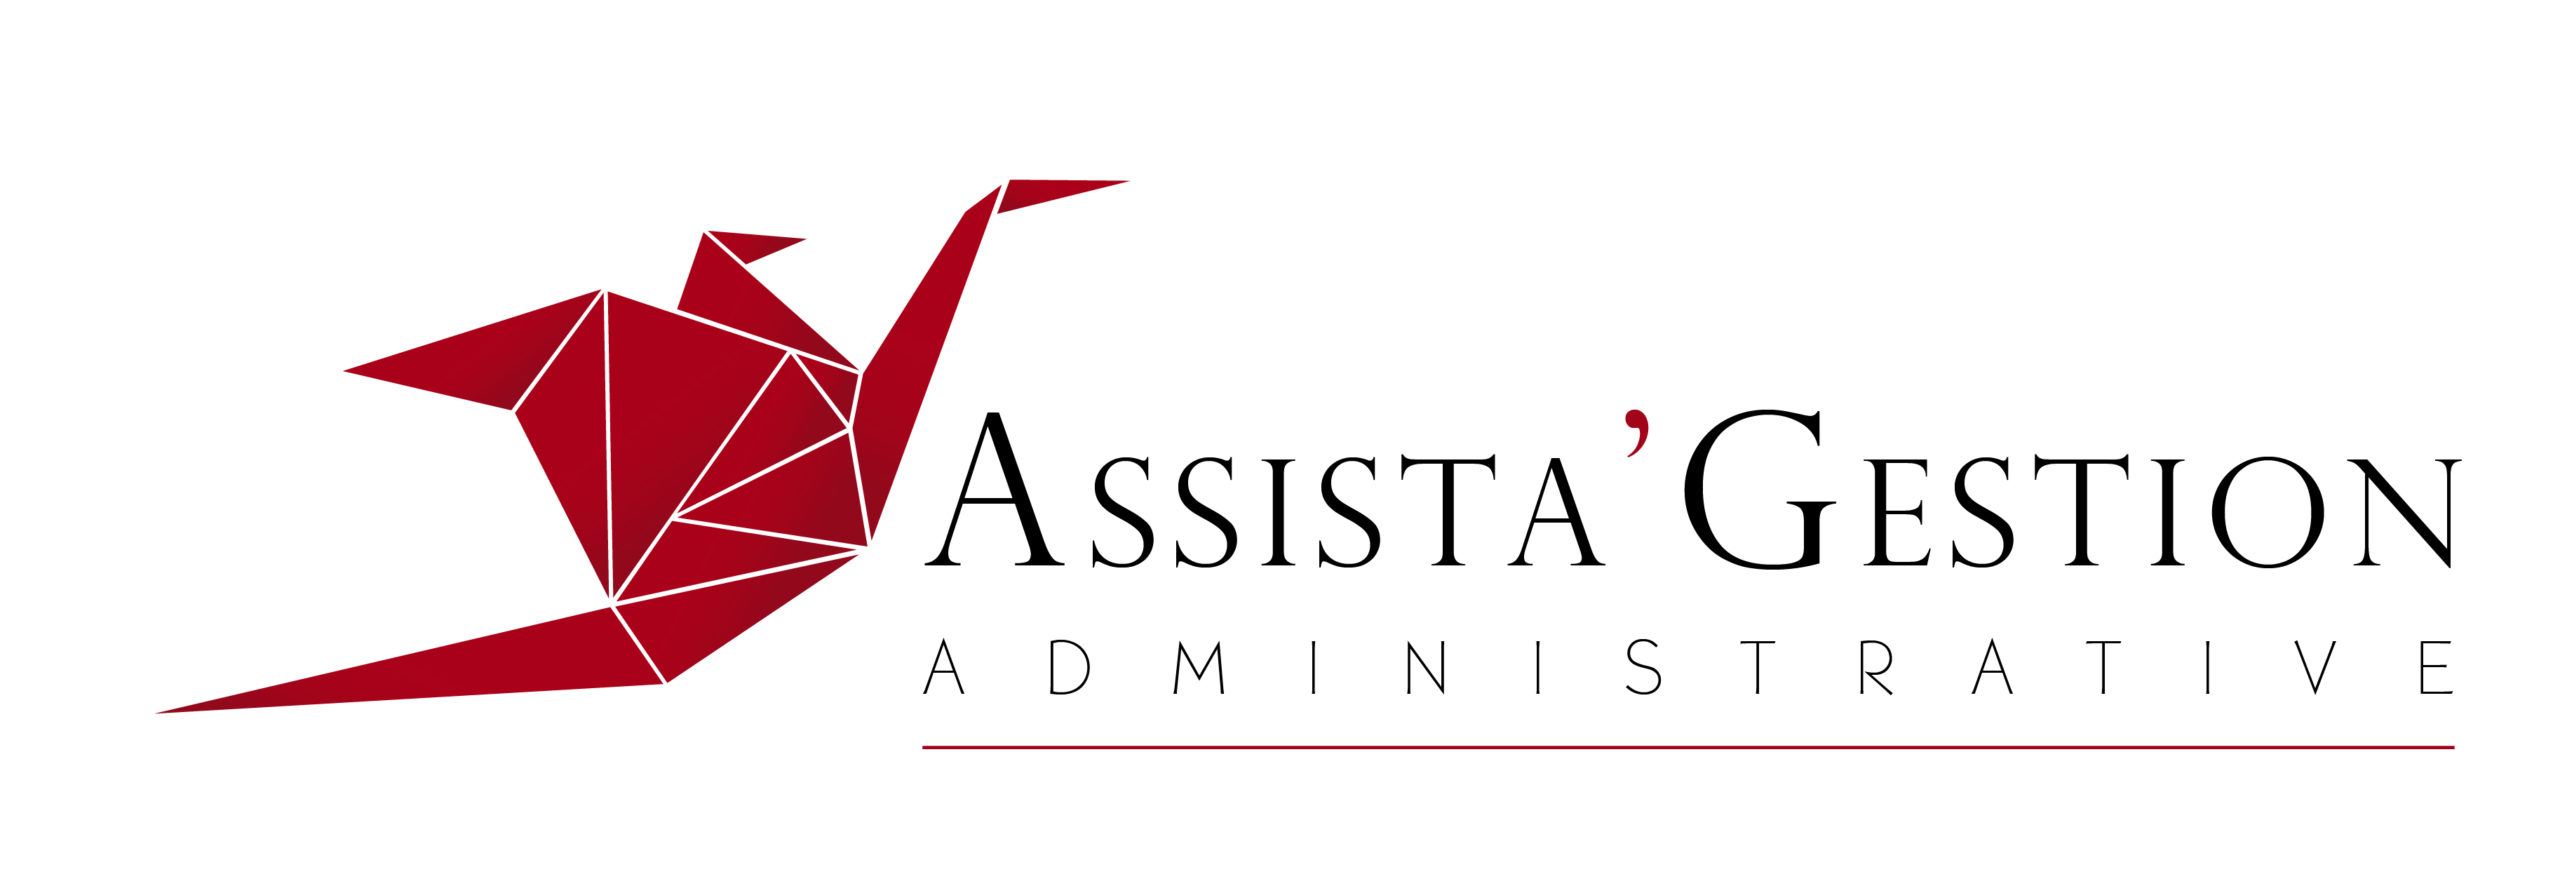 Assista_gestion_logo